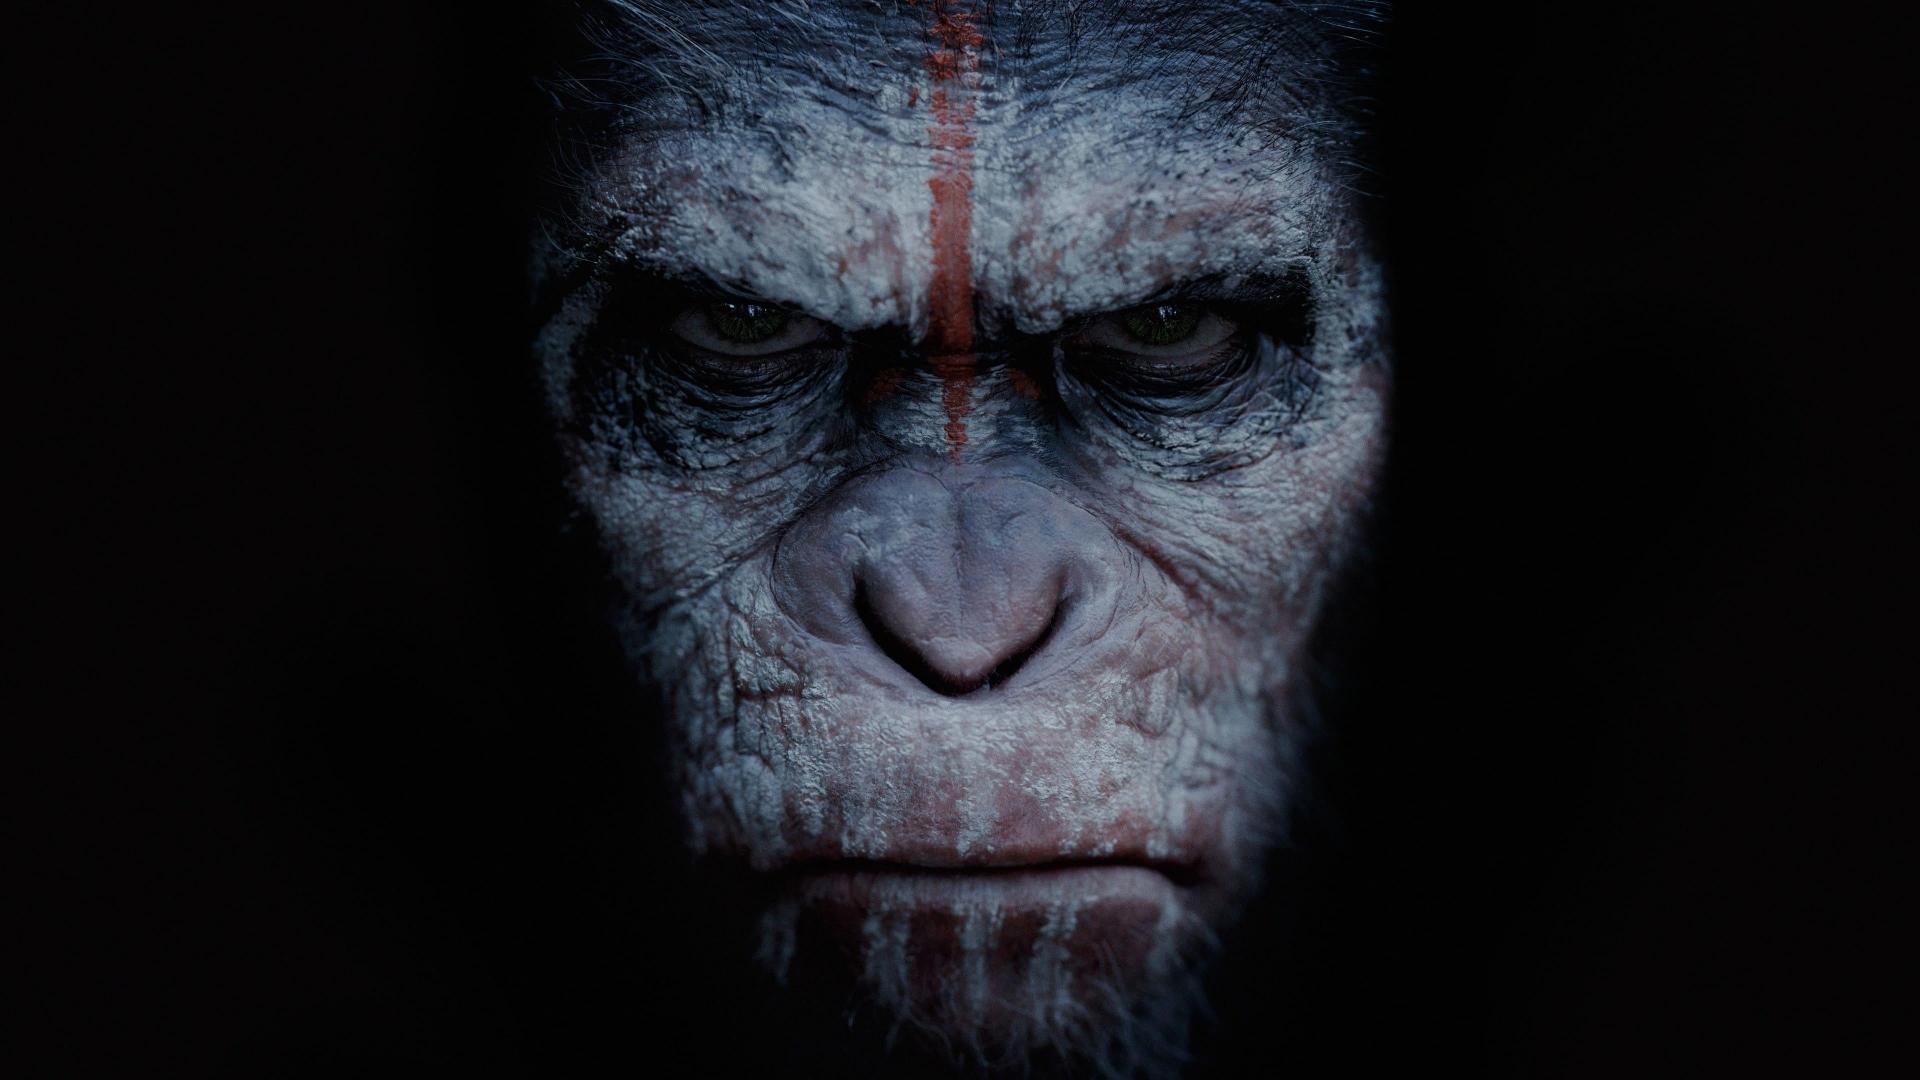 دانلود فیلم Dawn of the Planet of the Apes 2014